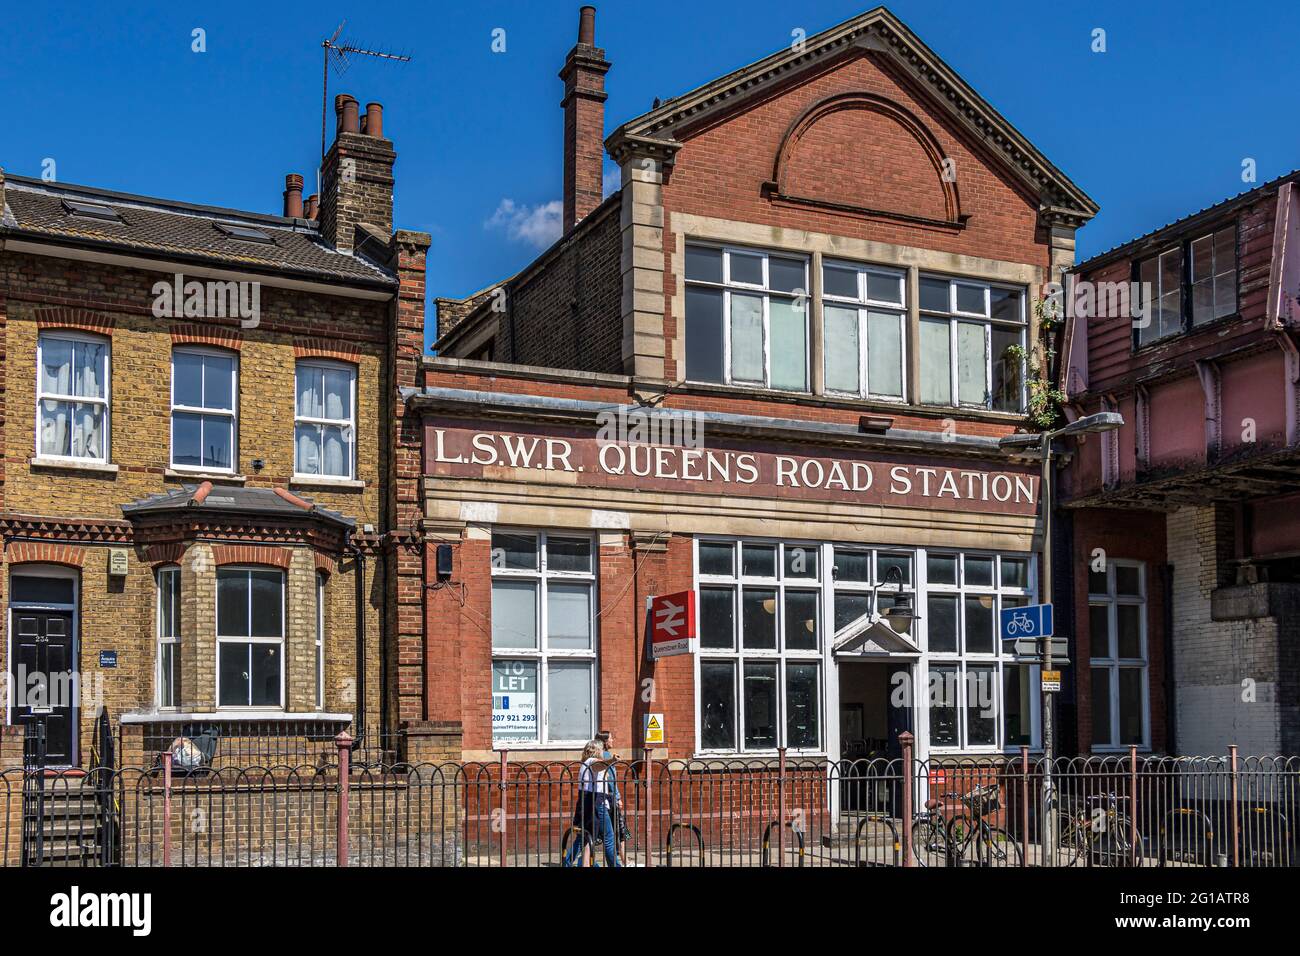 Queenstown Road, una estación de ferrocarril de la época victoriana en Battersea, abierta en 1877, la entrada todavía tiene el nombre original de Queens Road, Londres Foto de stock